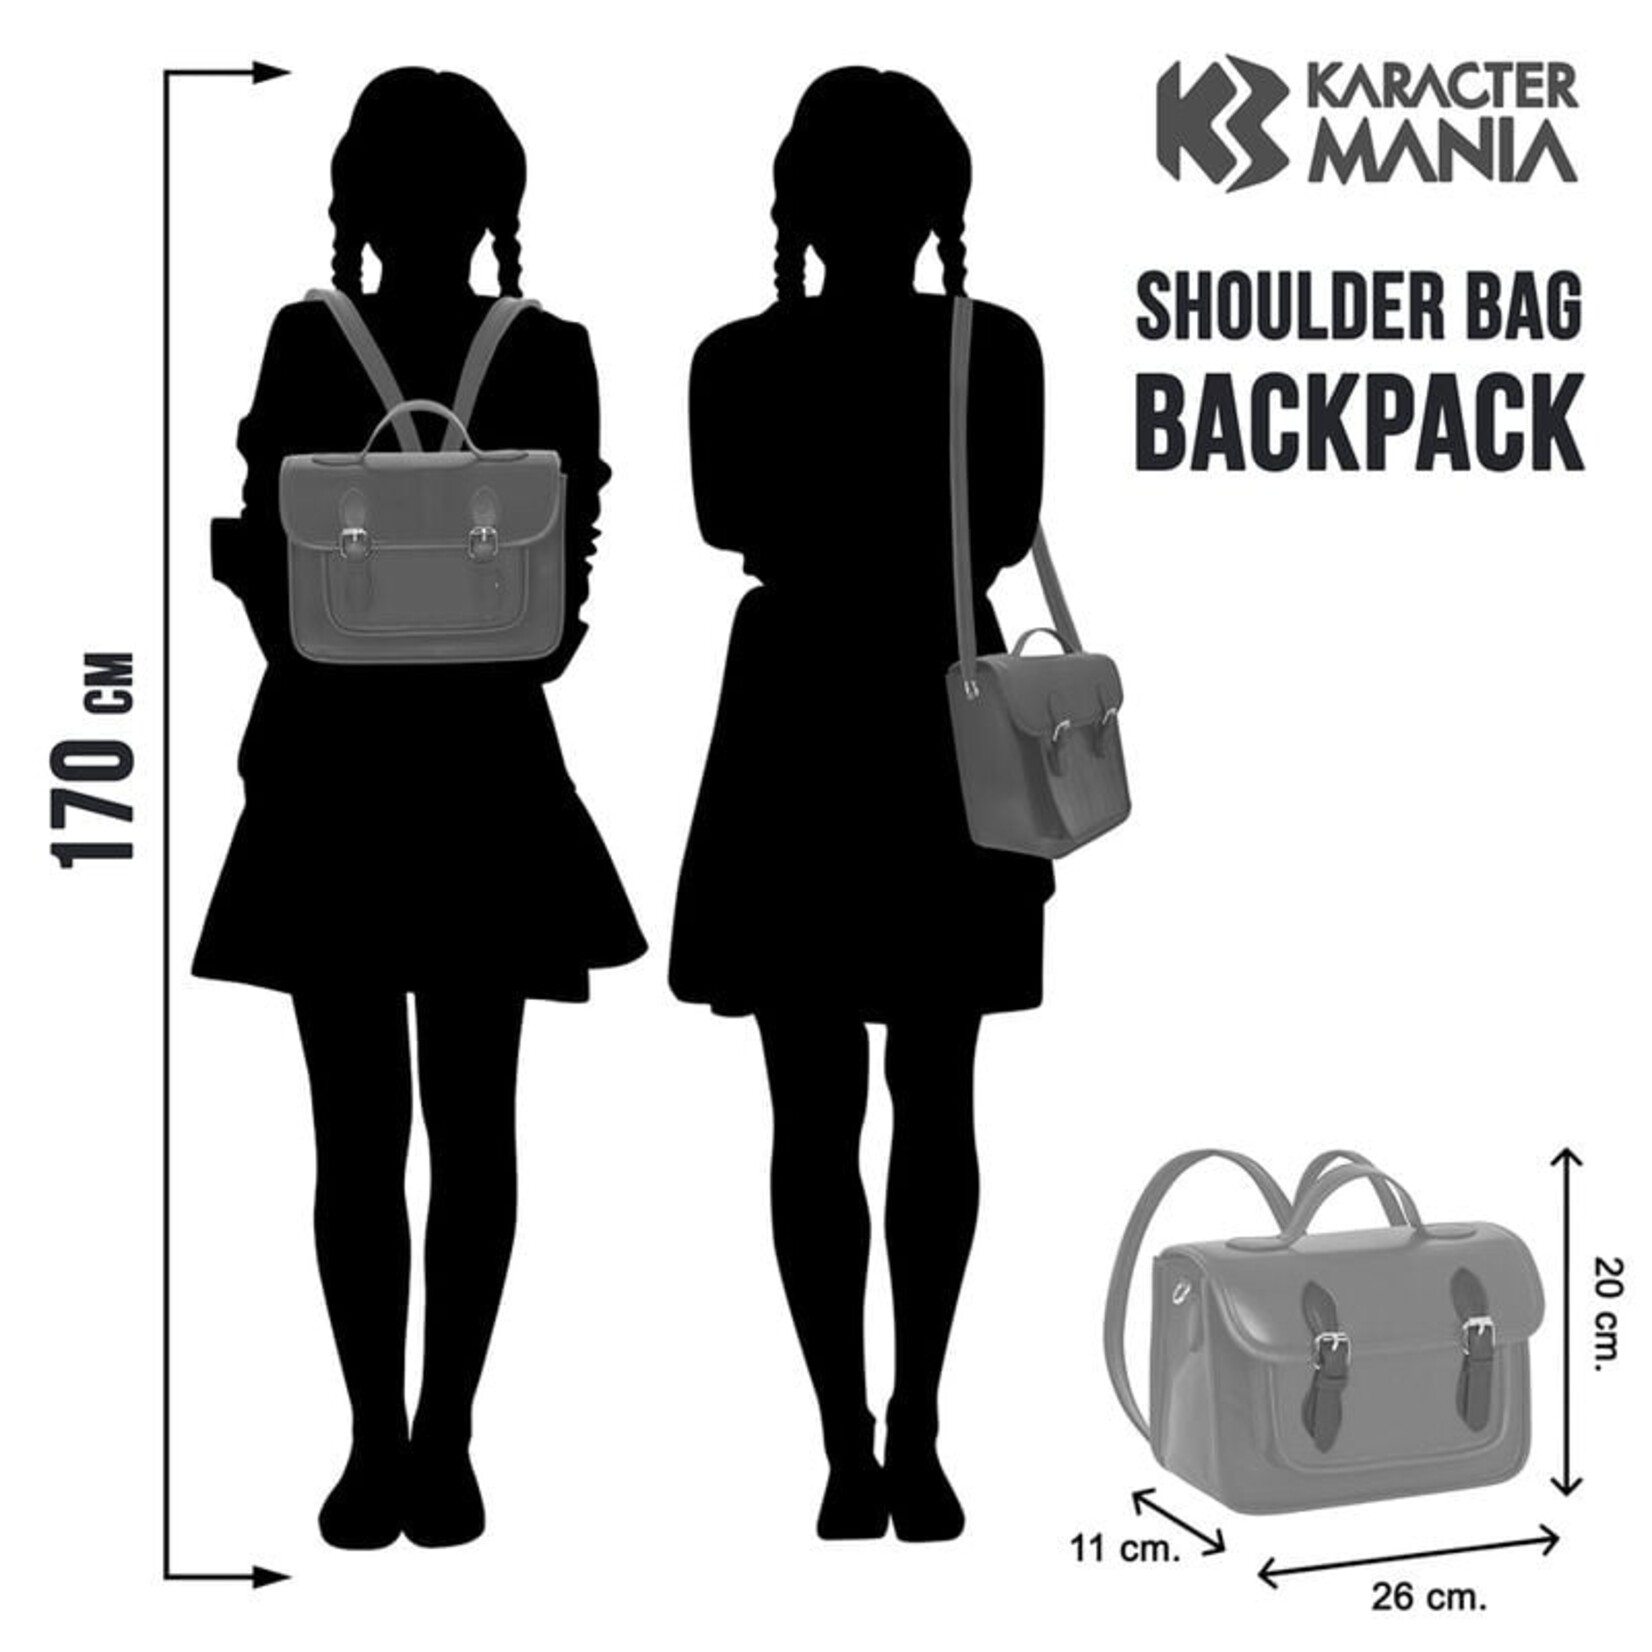 Karacter Mania Karacter Mania Wednesday Original Backpack Bag 26 cm